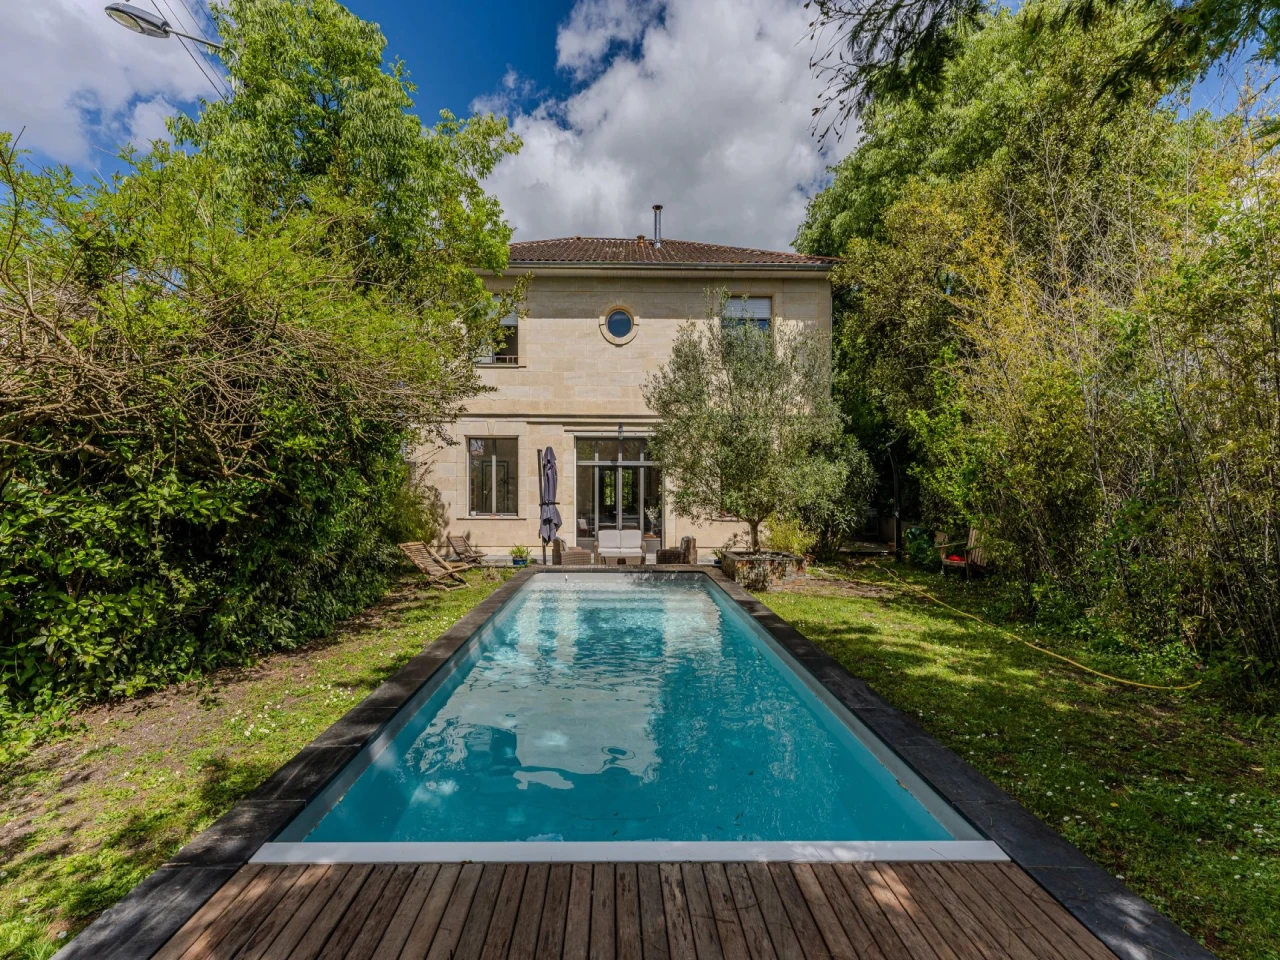 NOUVEAUTÉ maison à vendre Family house with pool and garden  - Bordeaux Caudéran